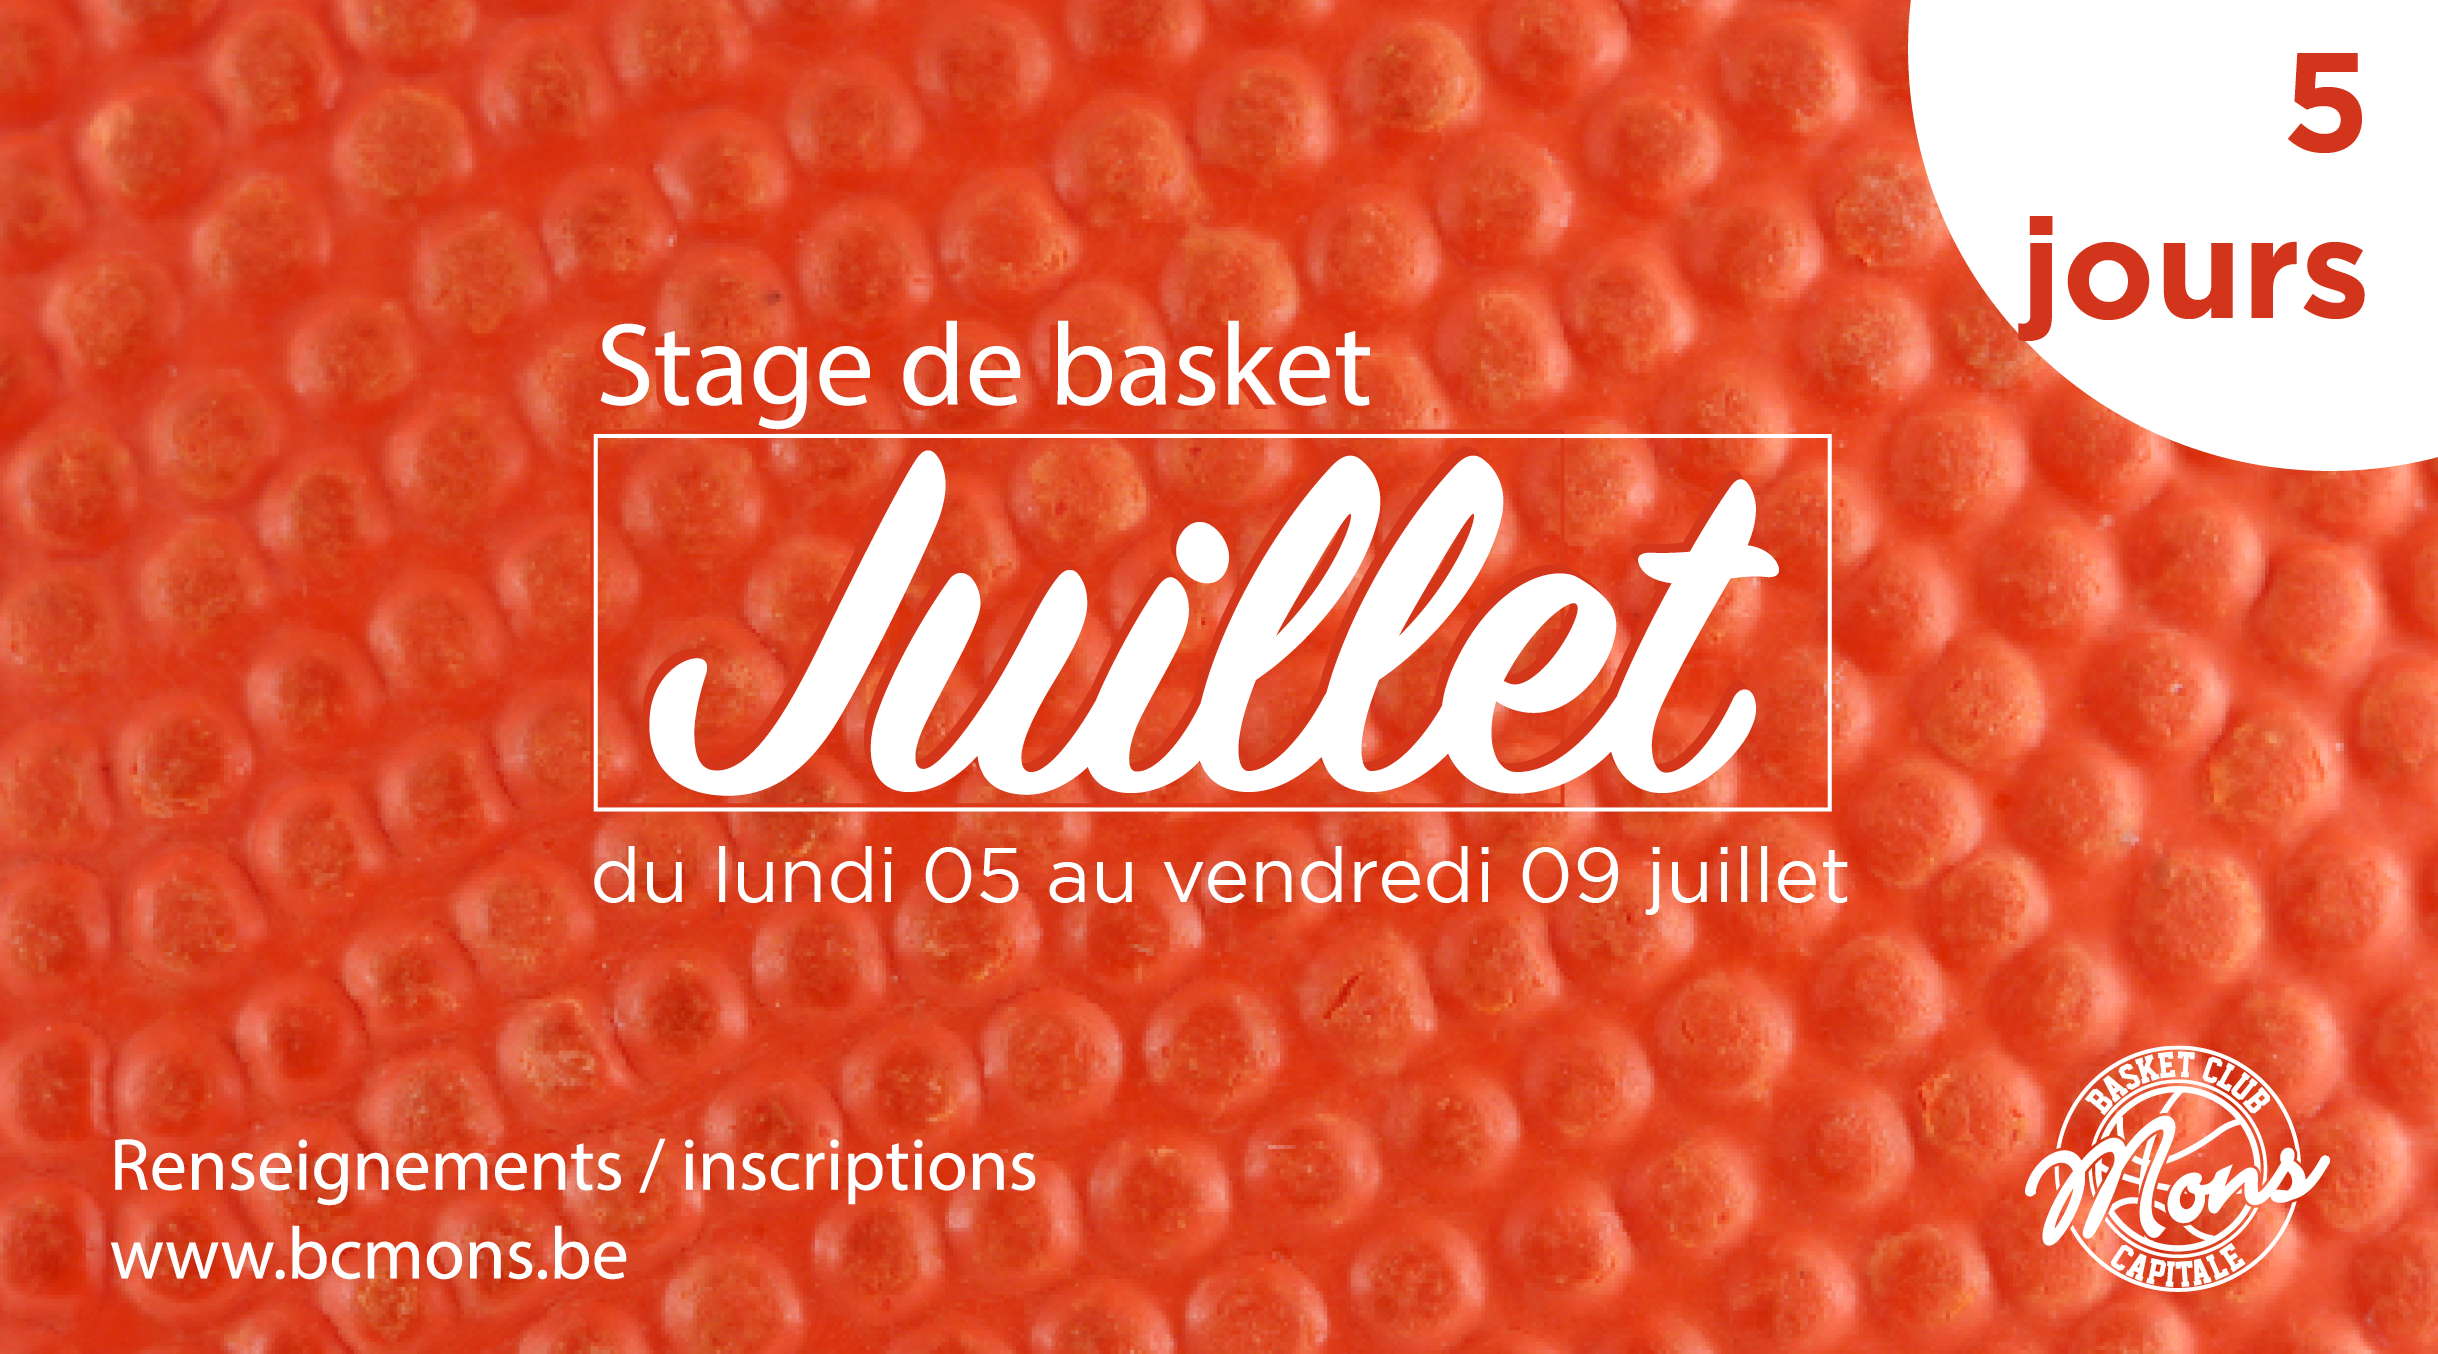 Stage de Basket Juillet